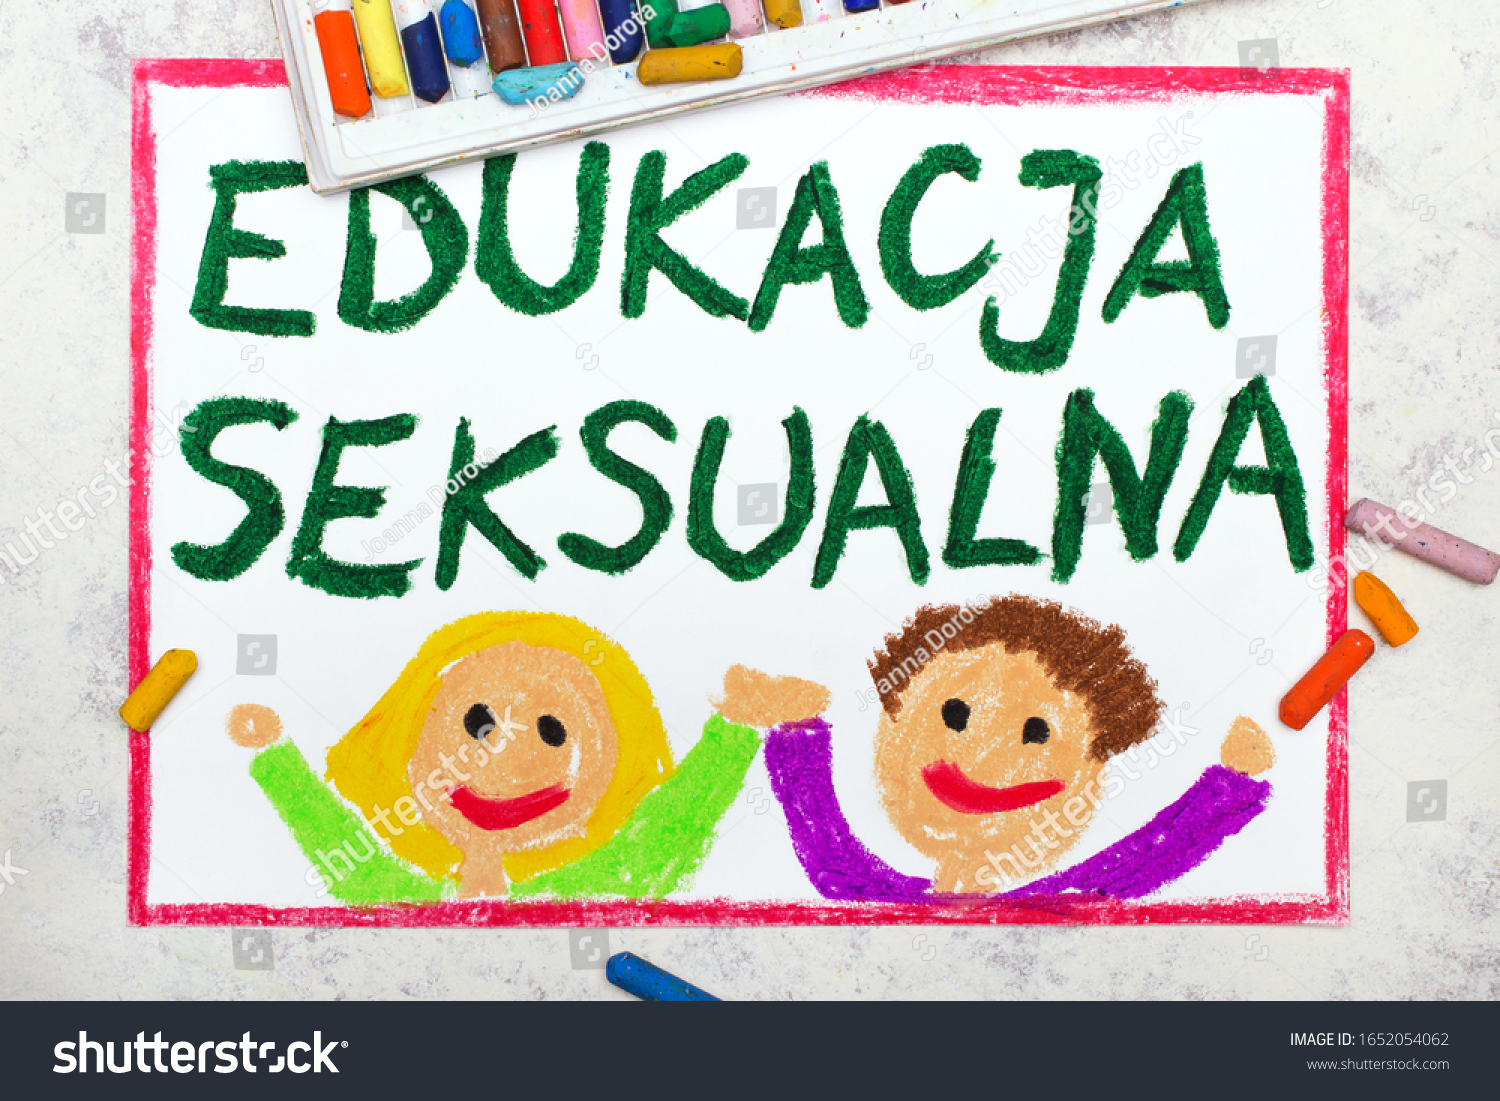 Edukacja Seksualna 3 รายการ ภาพ ภาพสต็อกและเวกเตอร์ Shutterstock 8198